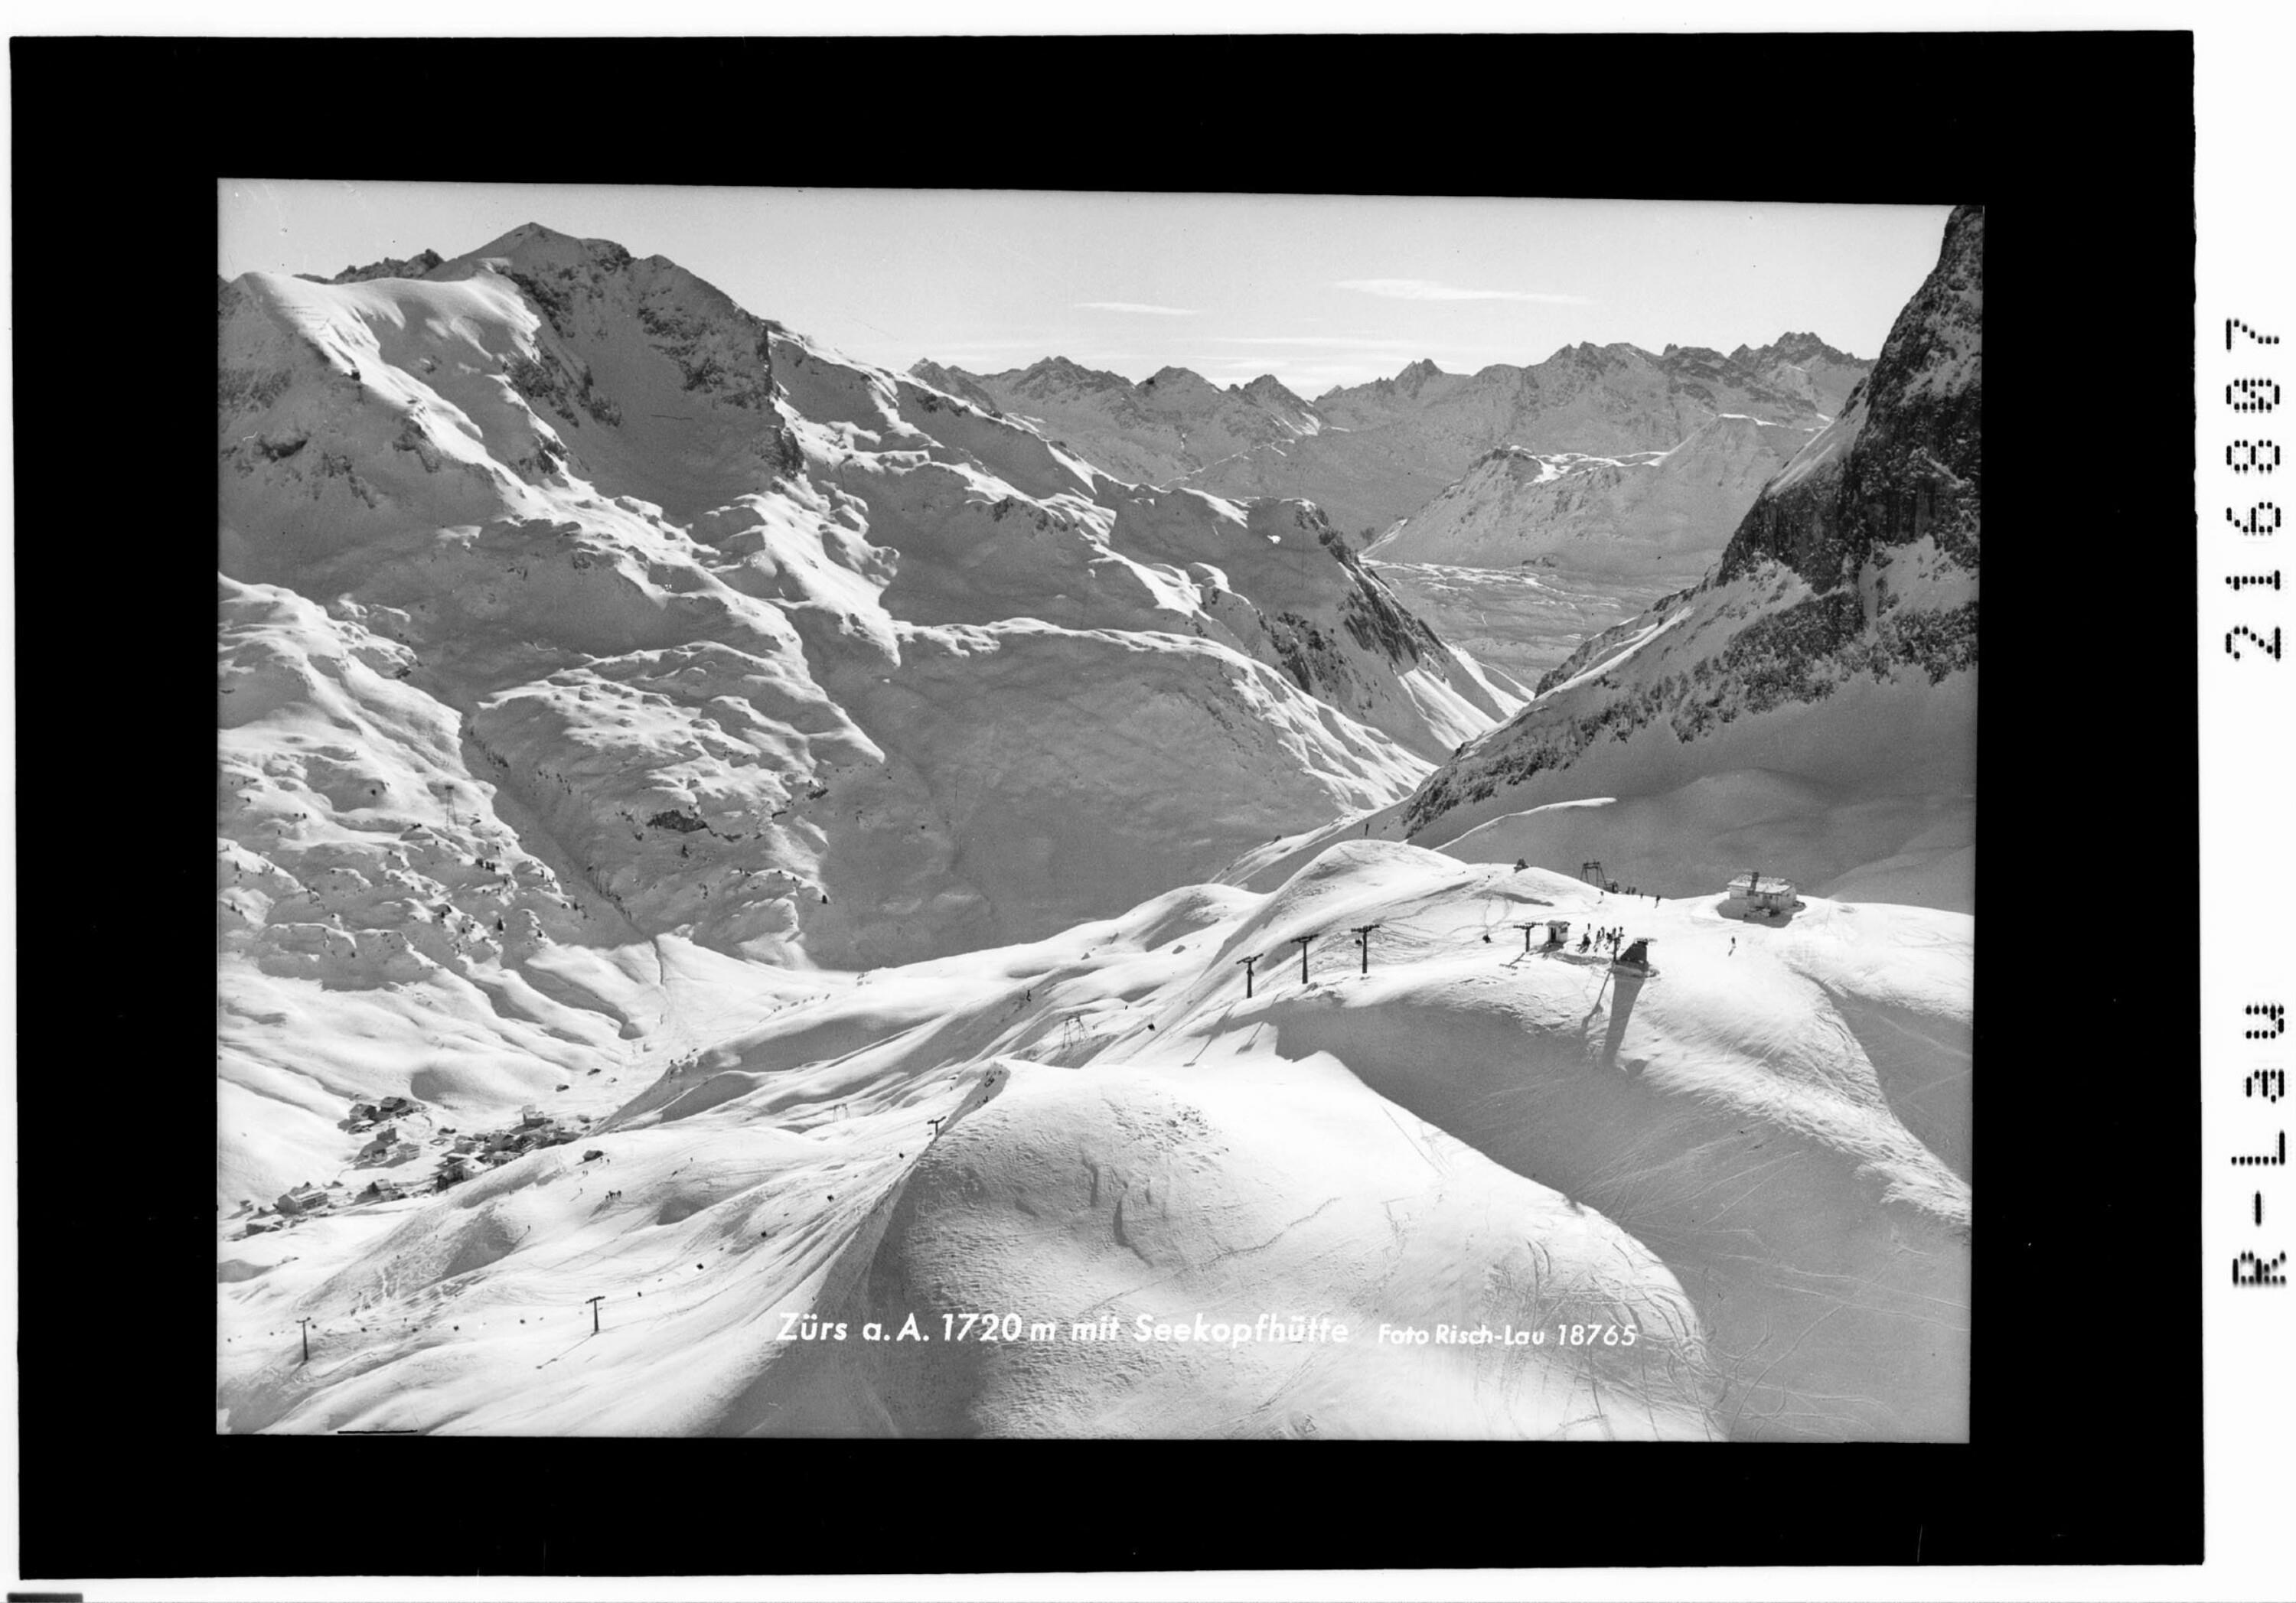 Zürs am Arlberg 1720 m mit Seekopfhütte></div>


    <hr>
    <div class=